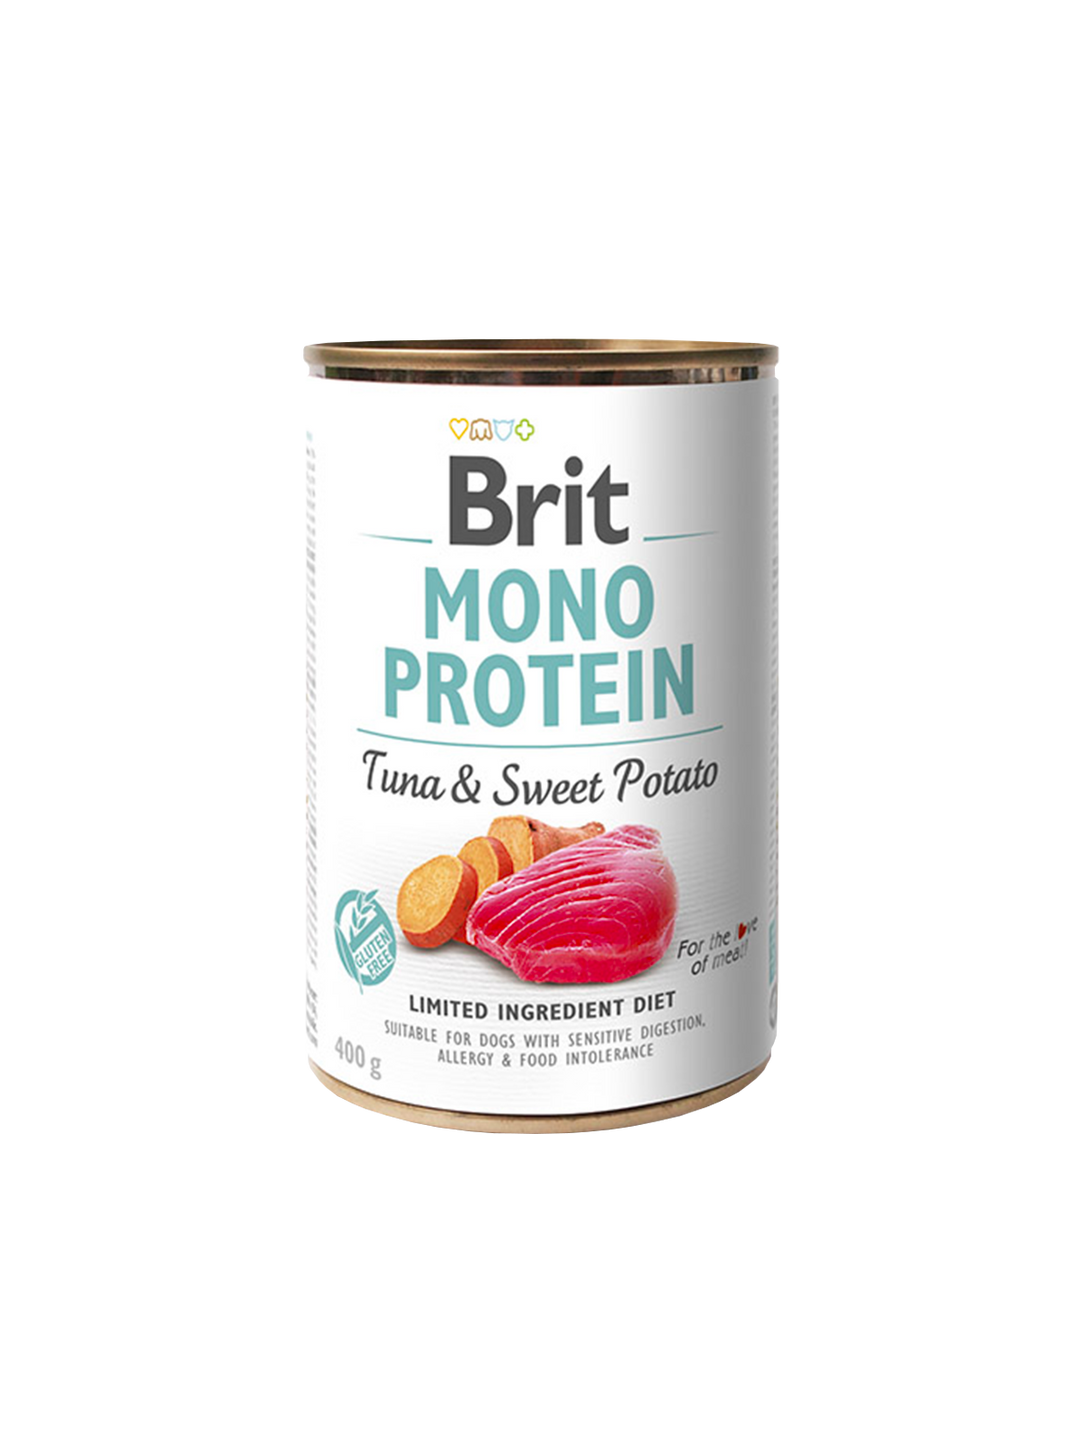 Brit Mono Protein tins 400g - Tuna & Sweet Potato